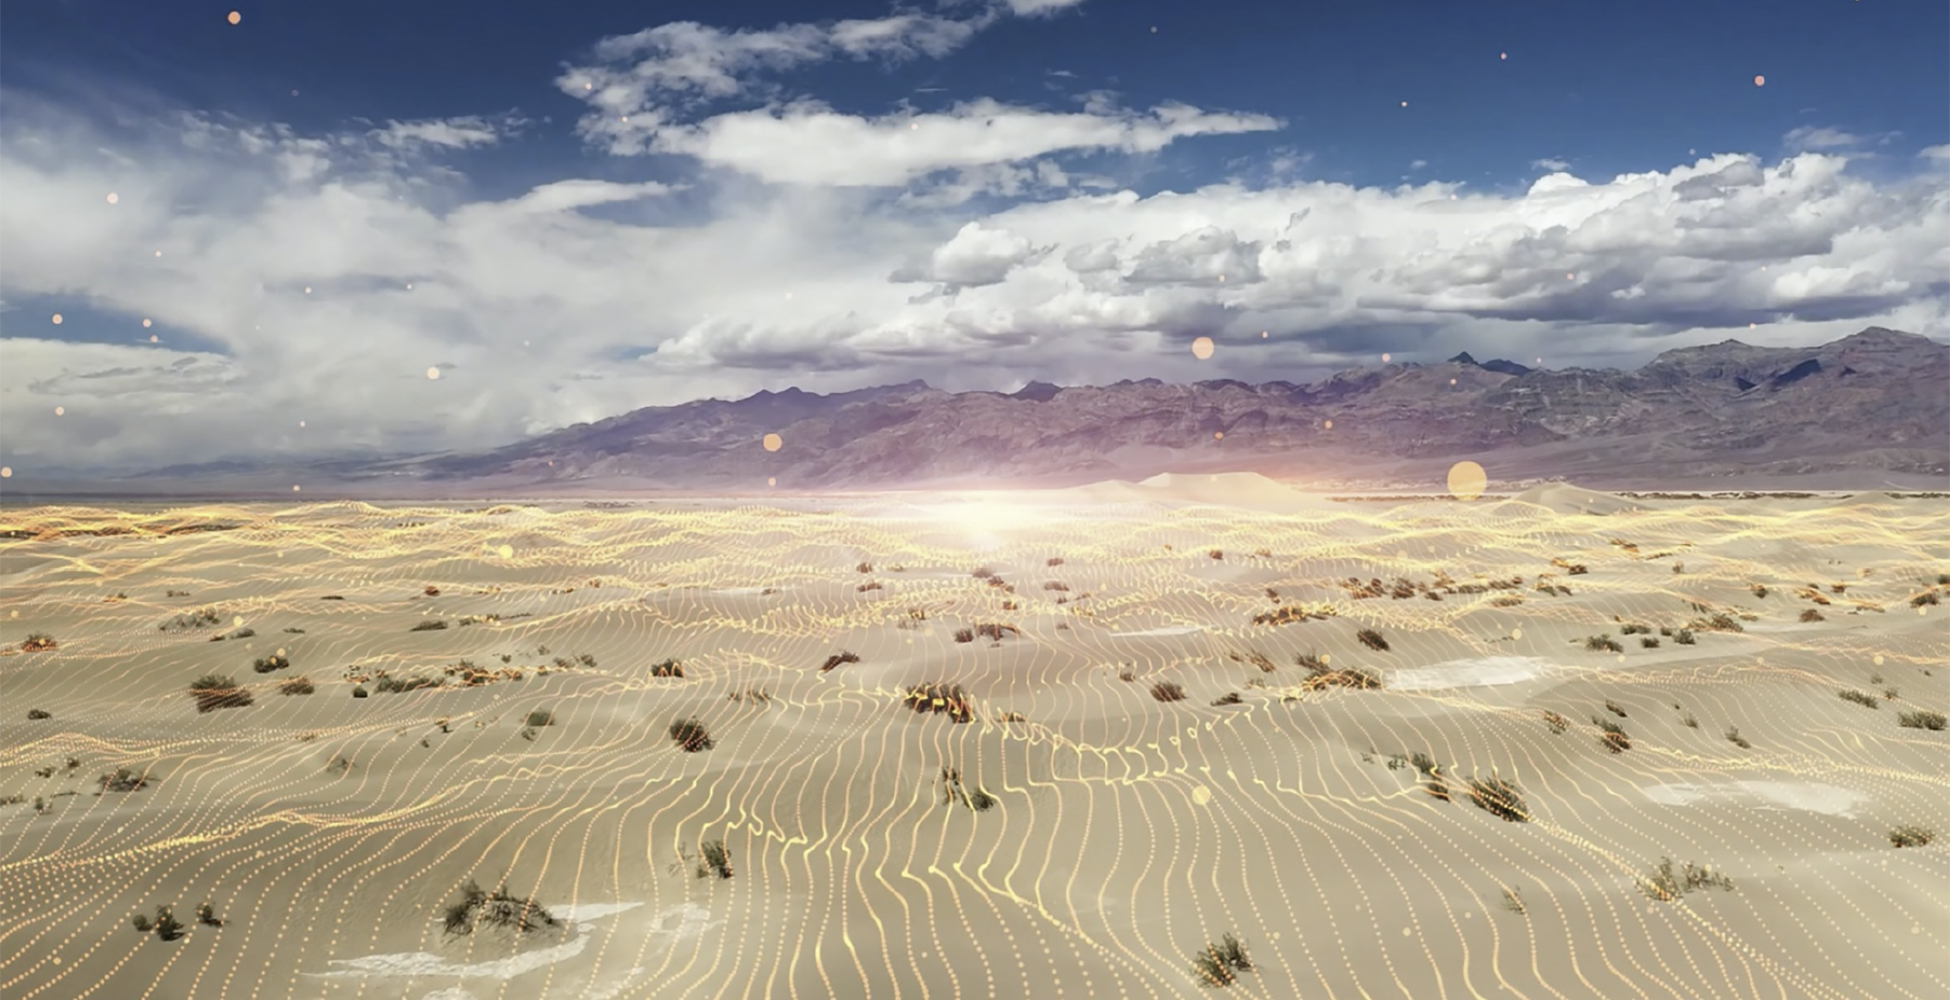 Digital lines over desert